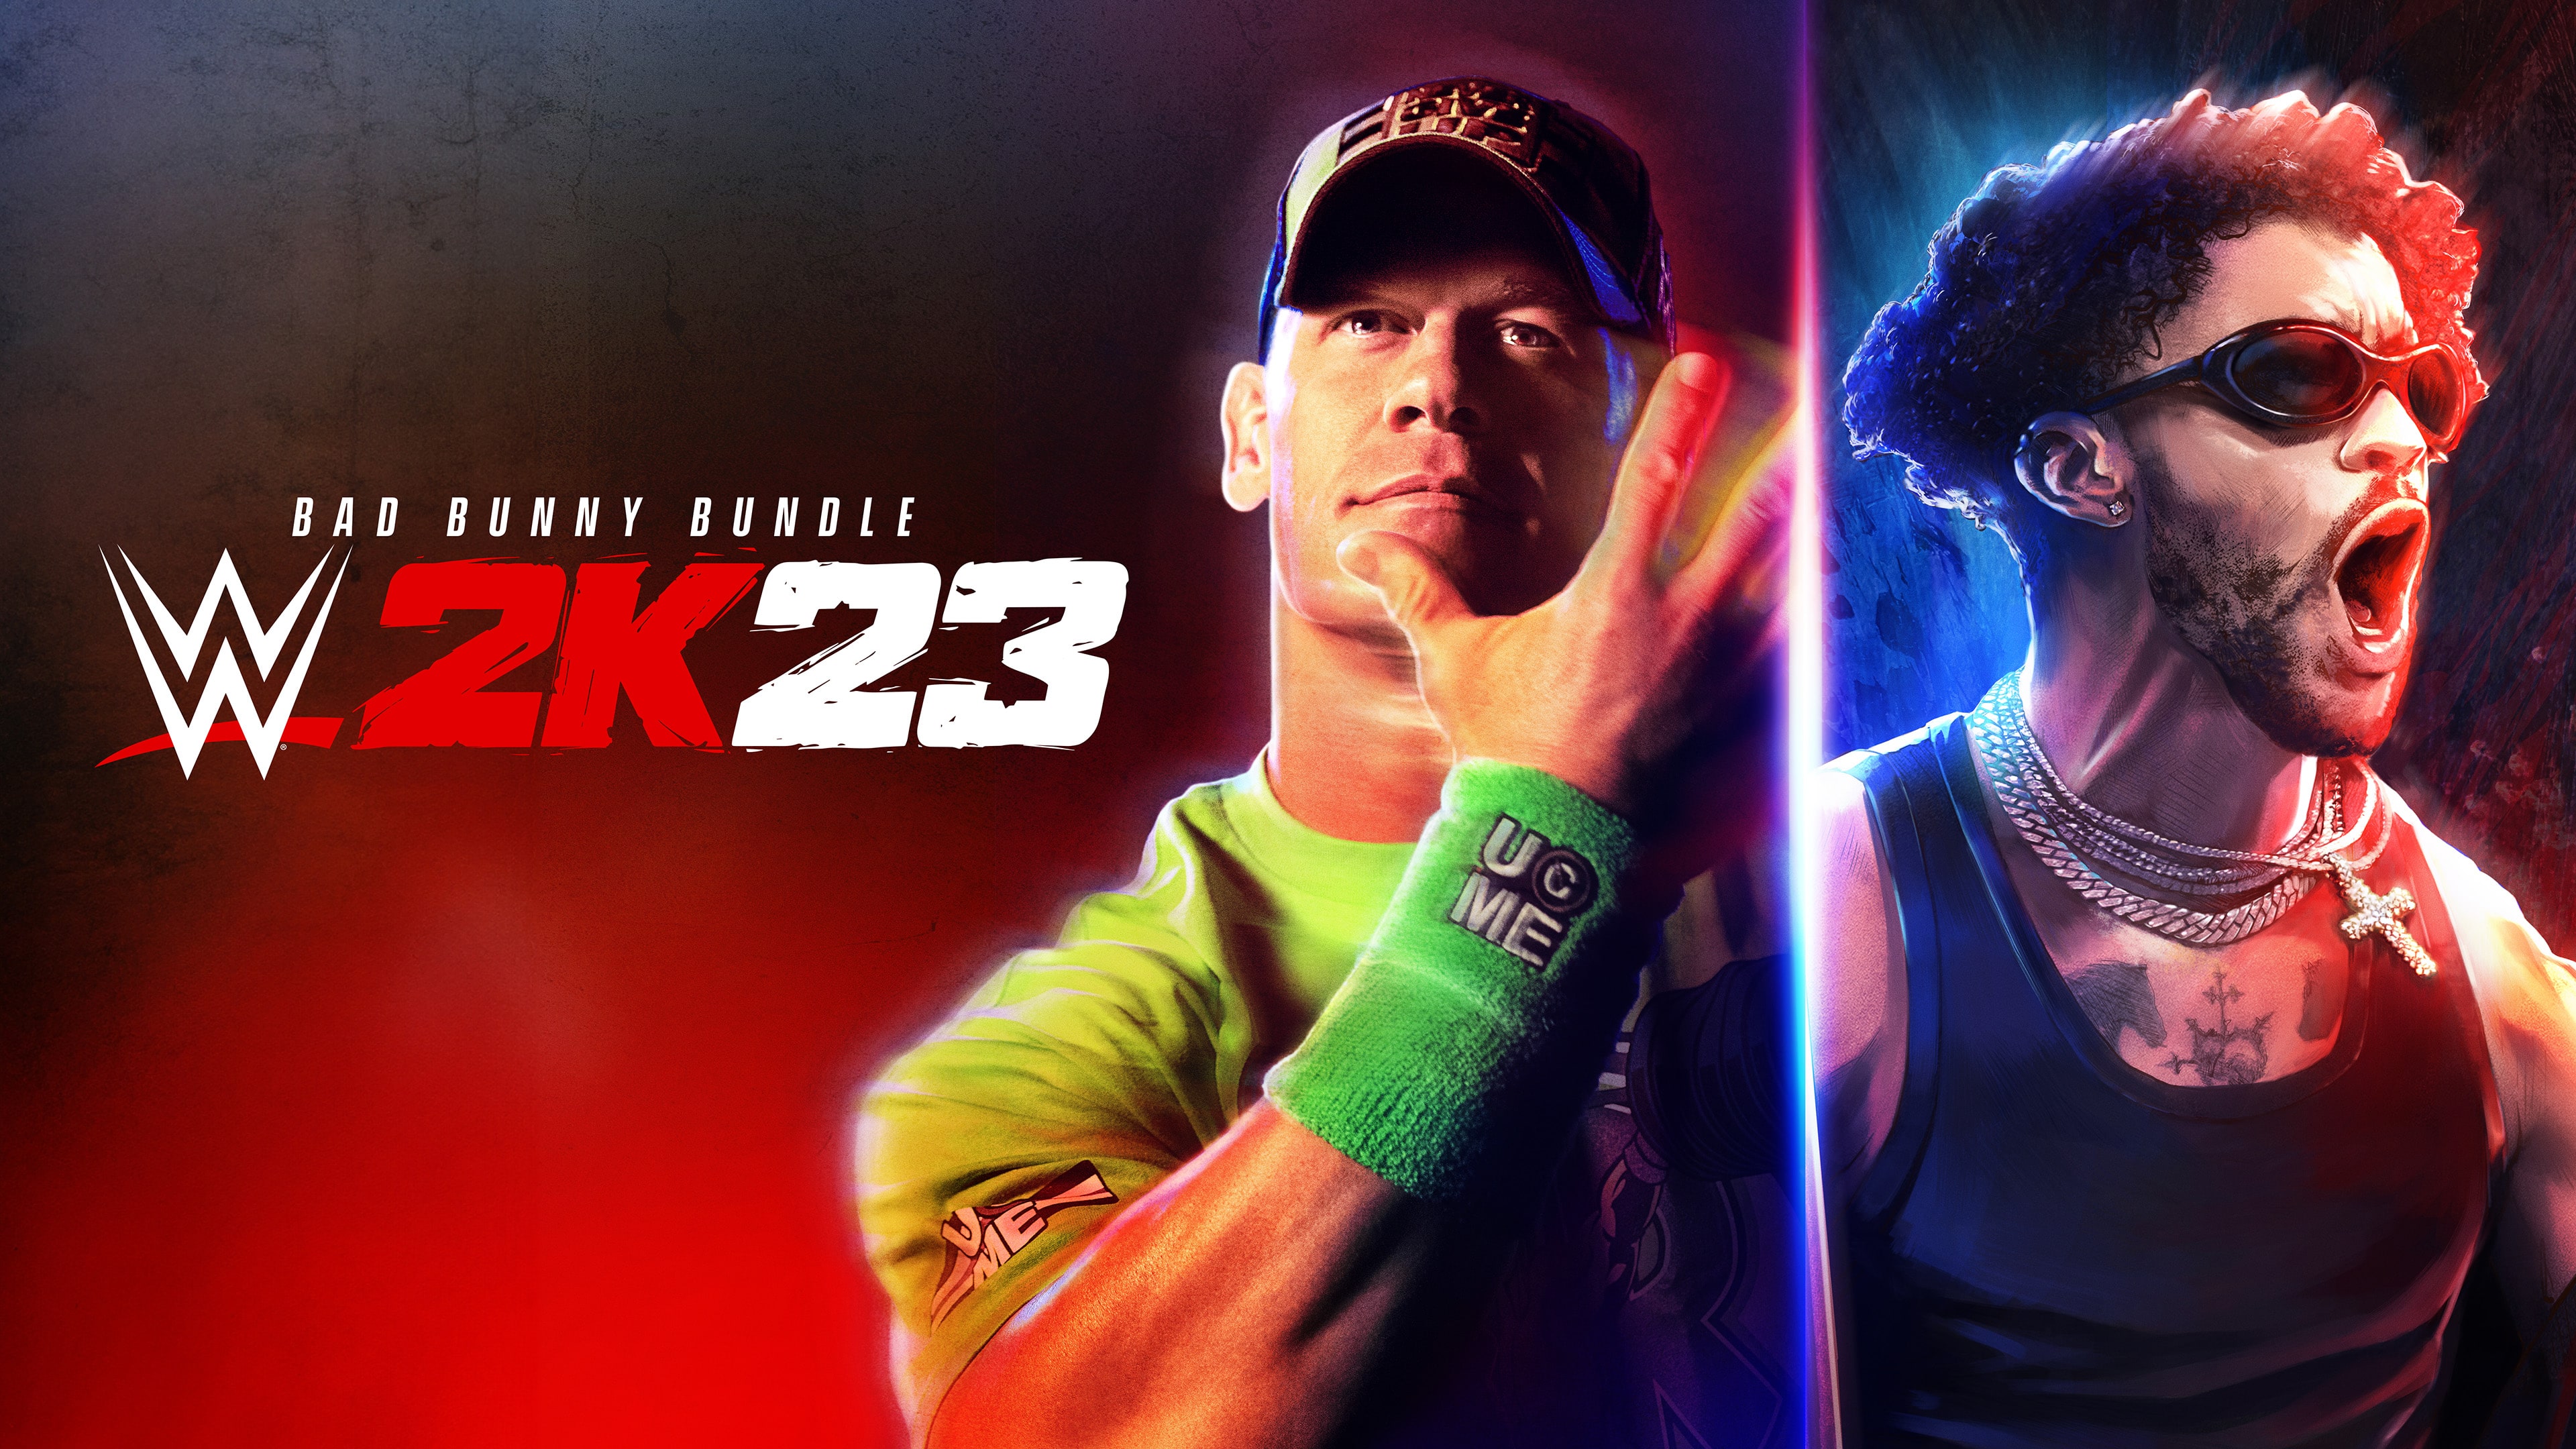 WWE 2K23 Bad Bunny Bundle (English)